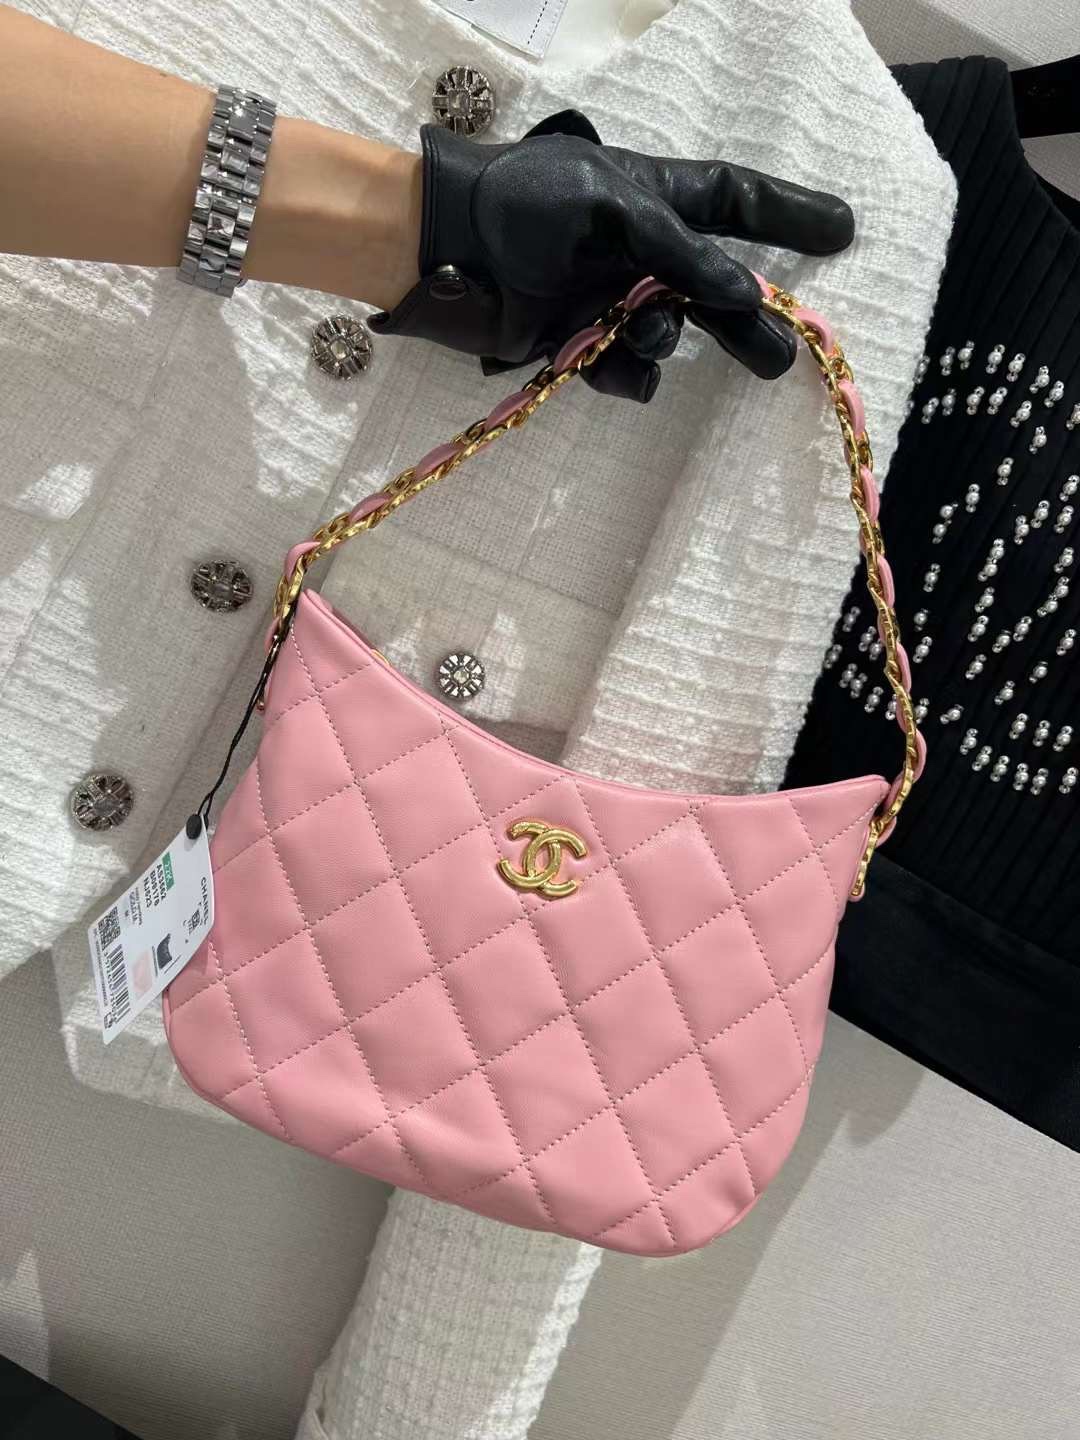 【P1580】香奈儿包包批发 Chanel 22k 新款hobo腋下包 粉色羊皮双C Logo链条包